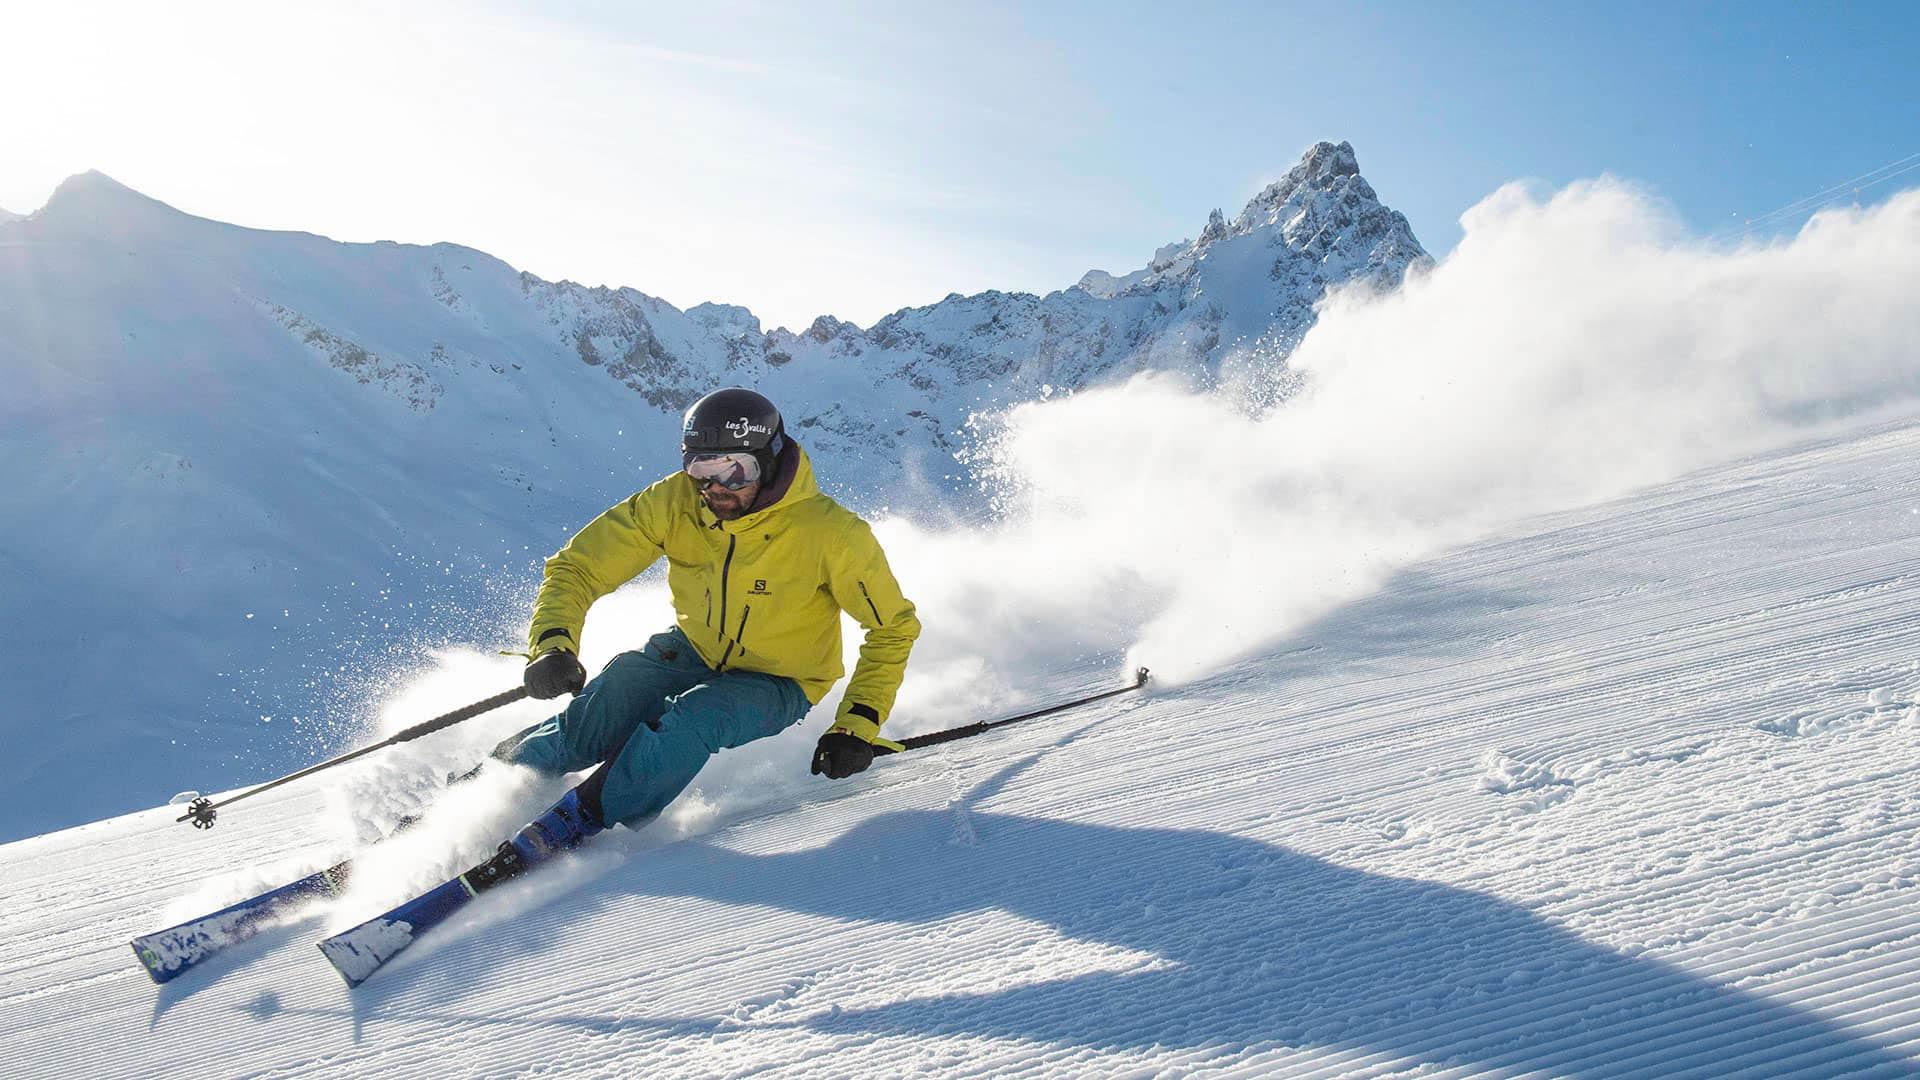 Guaranteed skiing